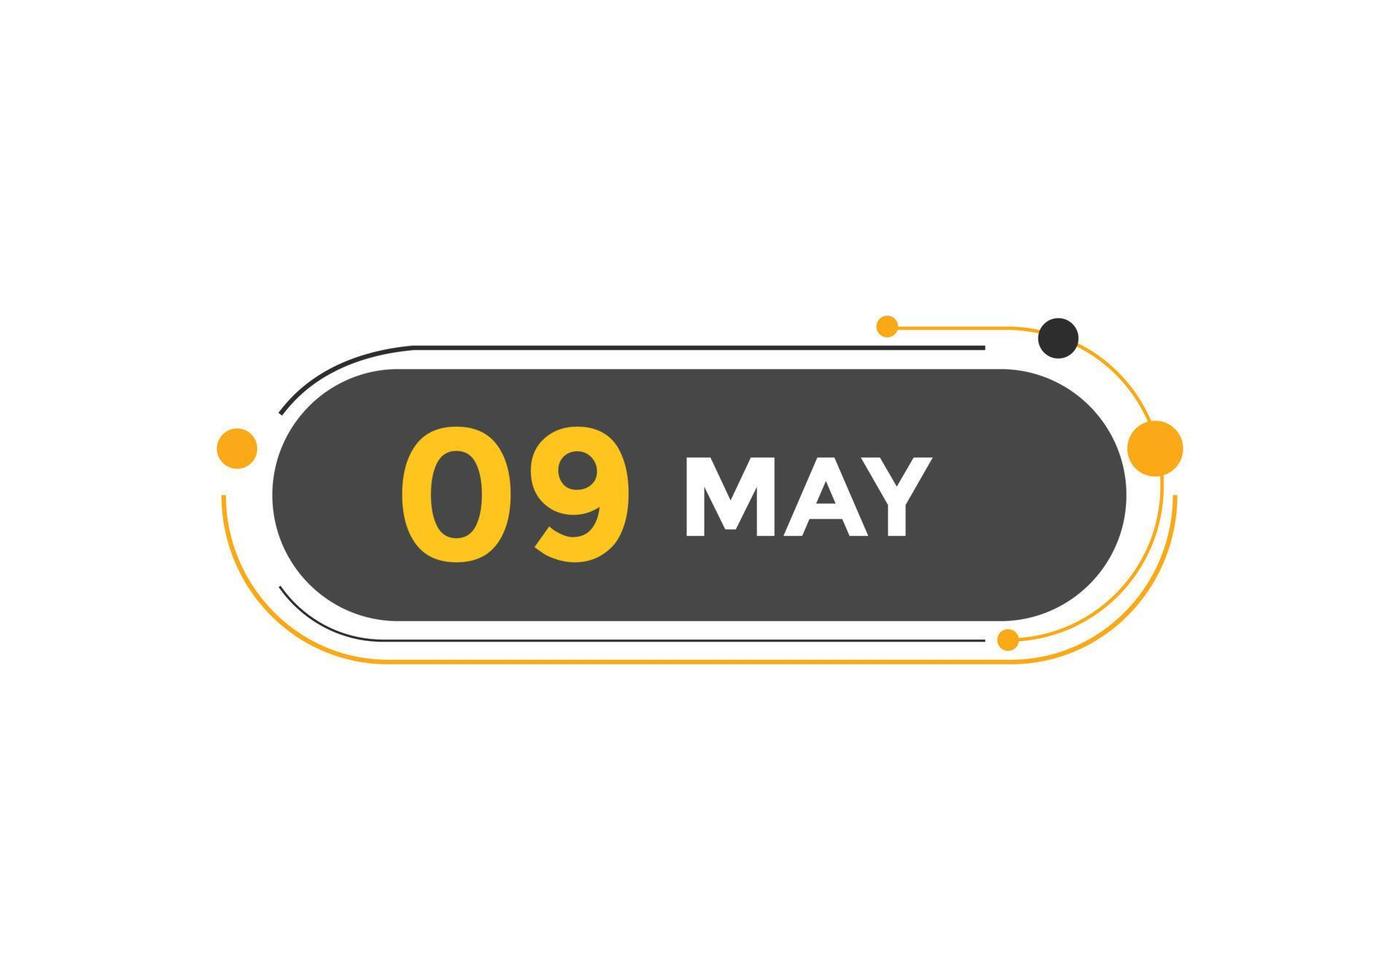 may 9 calendar reminder. 9th may daily calendar icon template. Calendar 9th may icon Design template. Vector illustration